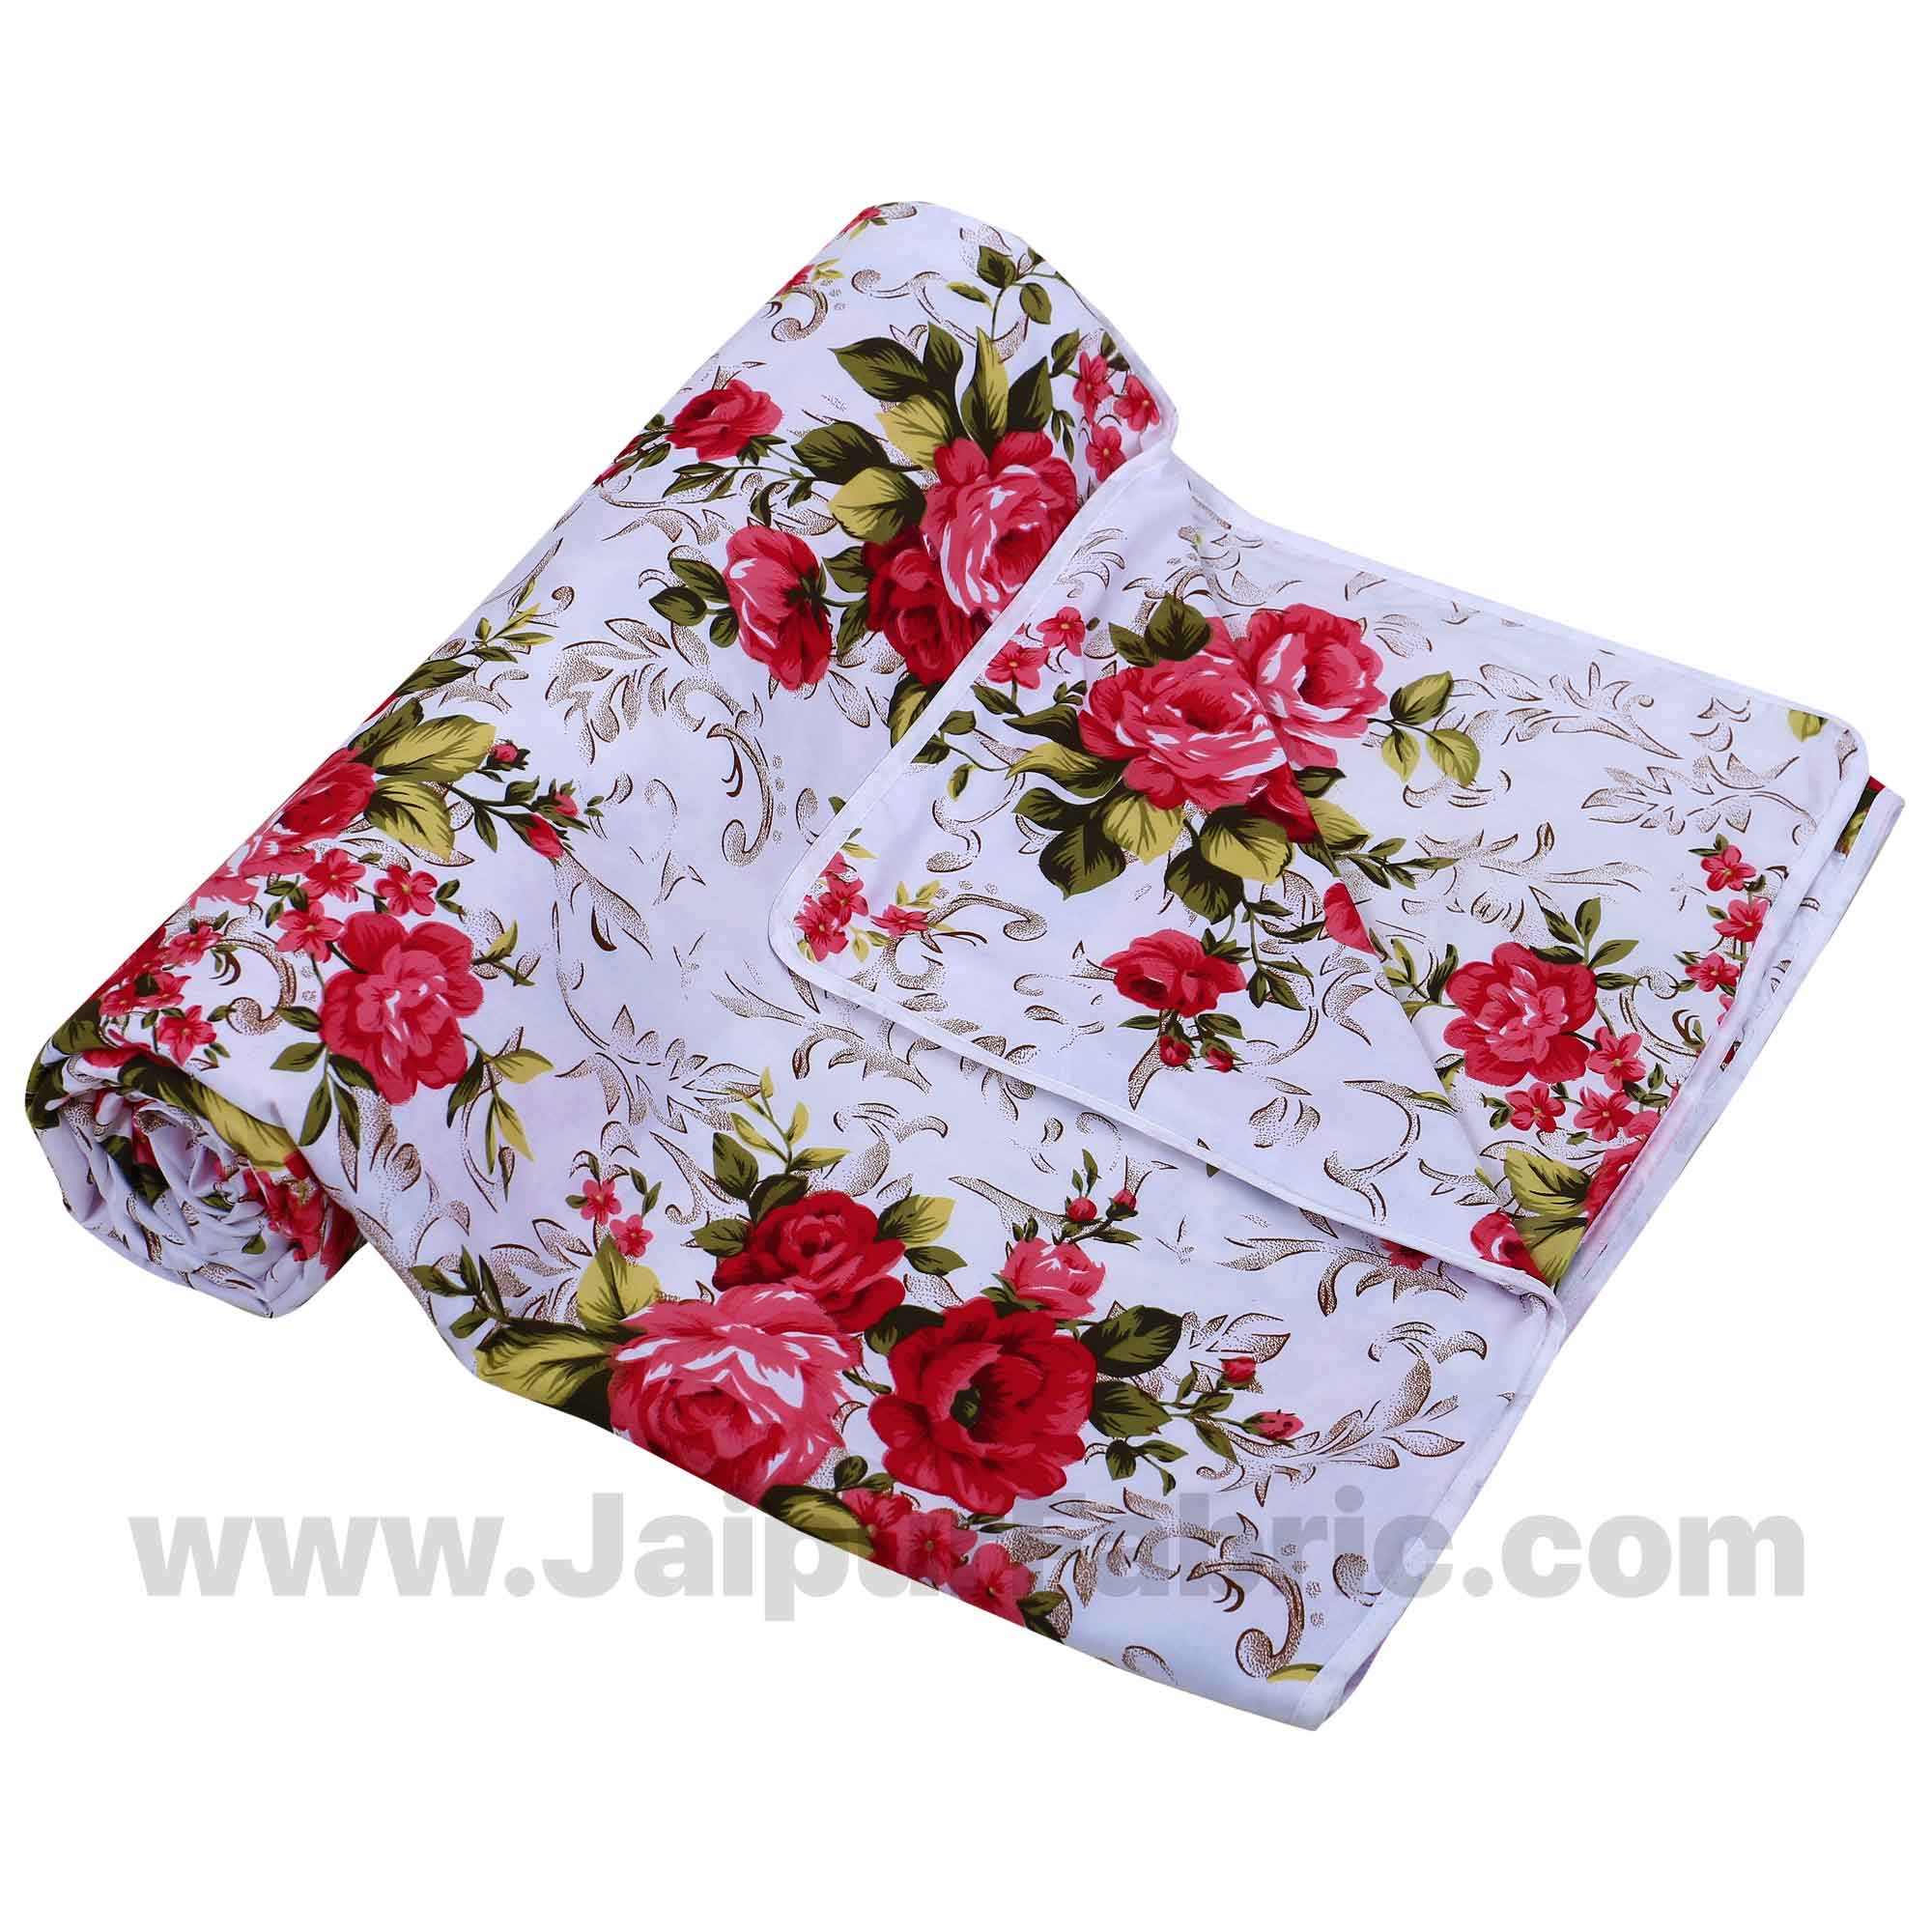 Cotton White Red Roses Reversible Double Blanket/Duvet/Quilt/AC Dohar